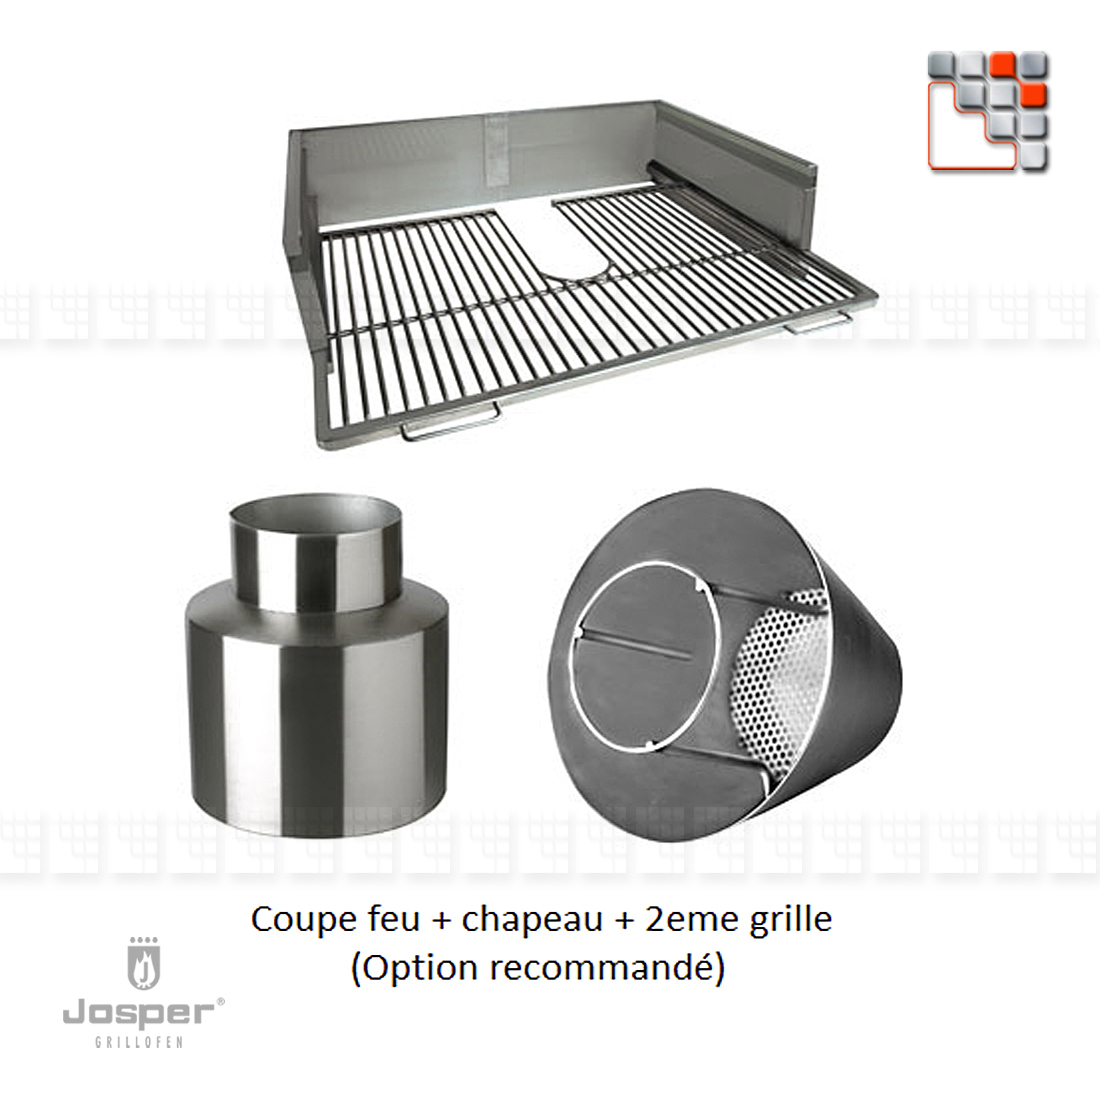 Kit Coupe feu + Chapeau + 2eme grille Josper J48-KHJX JOSPER Grill Fours & Rotissoires à braises JOSPER